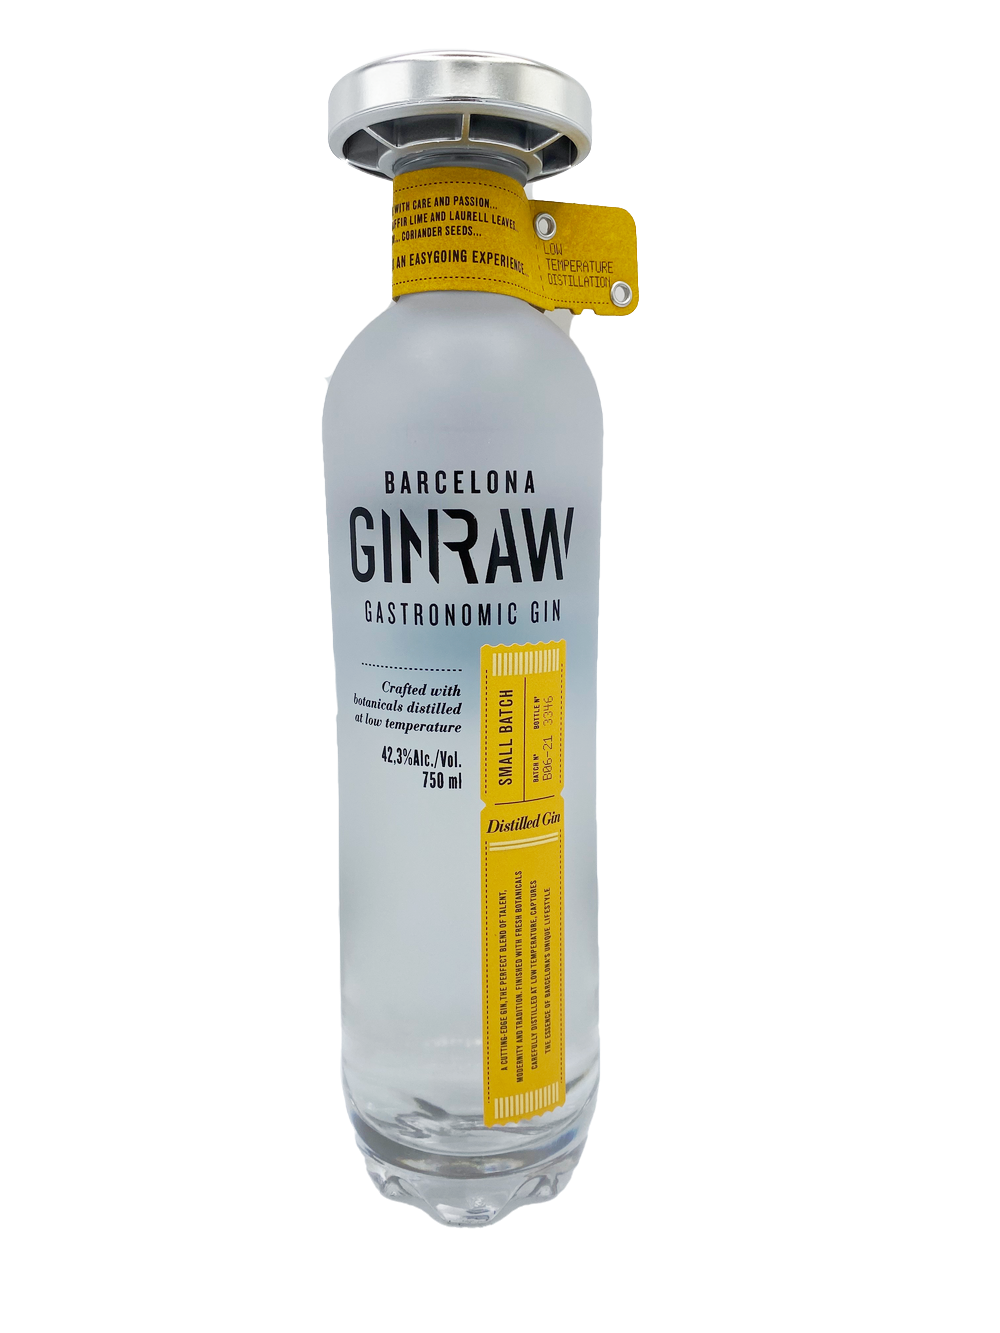 Ginraw Barcelona Gastronimc Gin 750ml